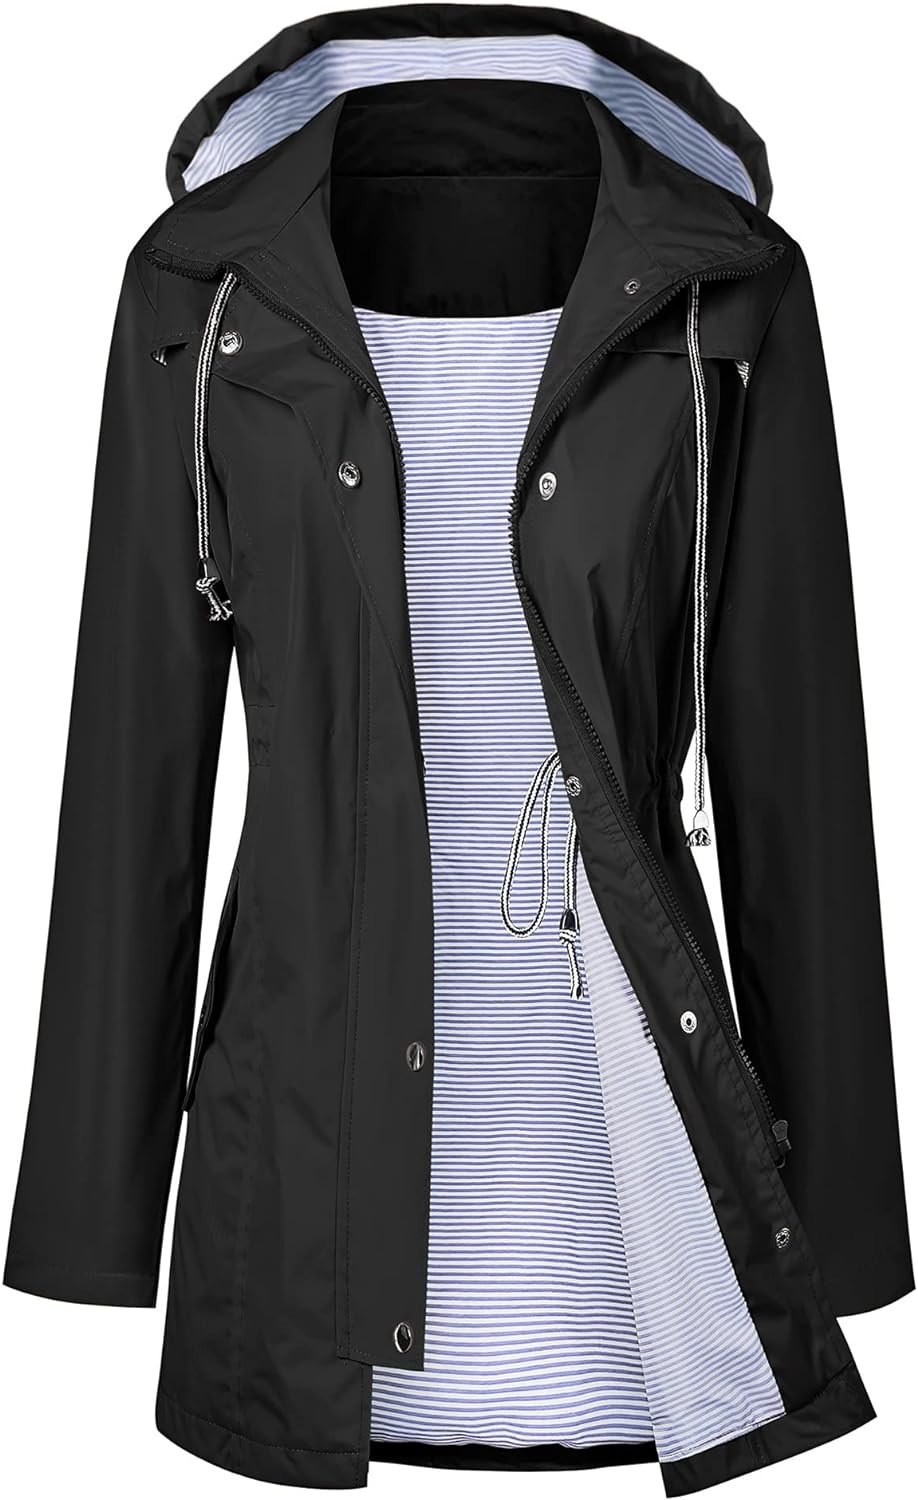 LOMON Raincoat Women Waterproof Long Hooded Trench Coats Lined Windbreaker Travel Jacket S-XXL